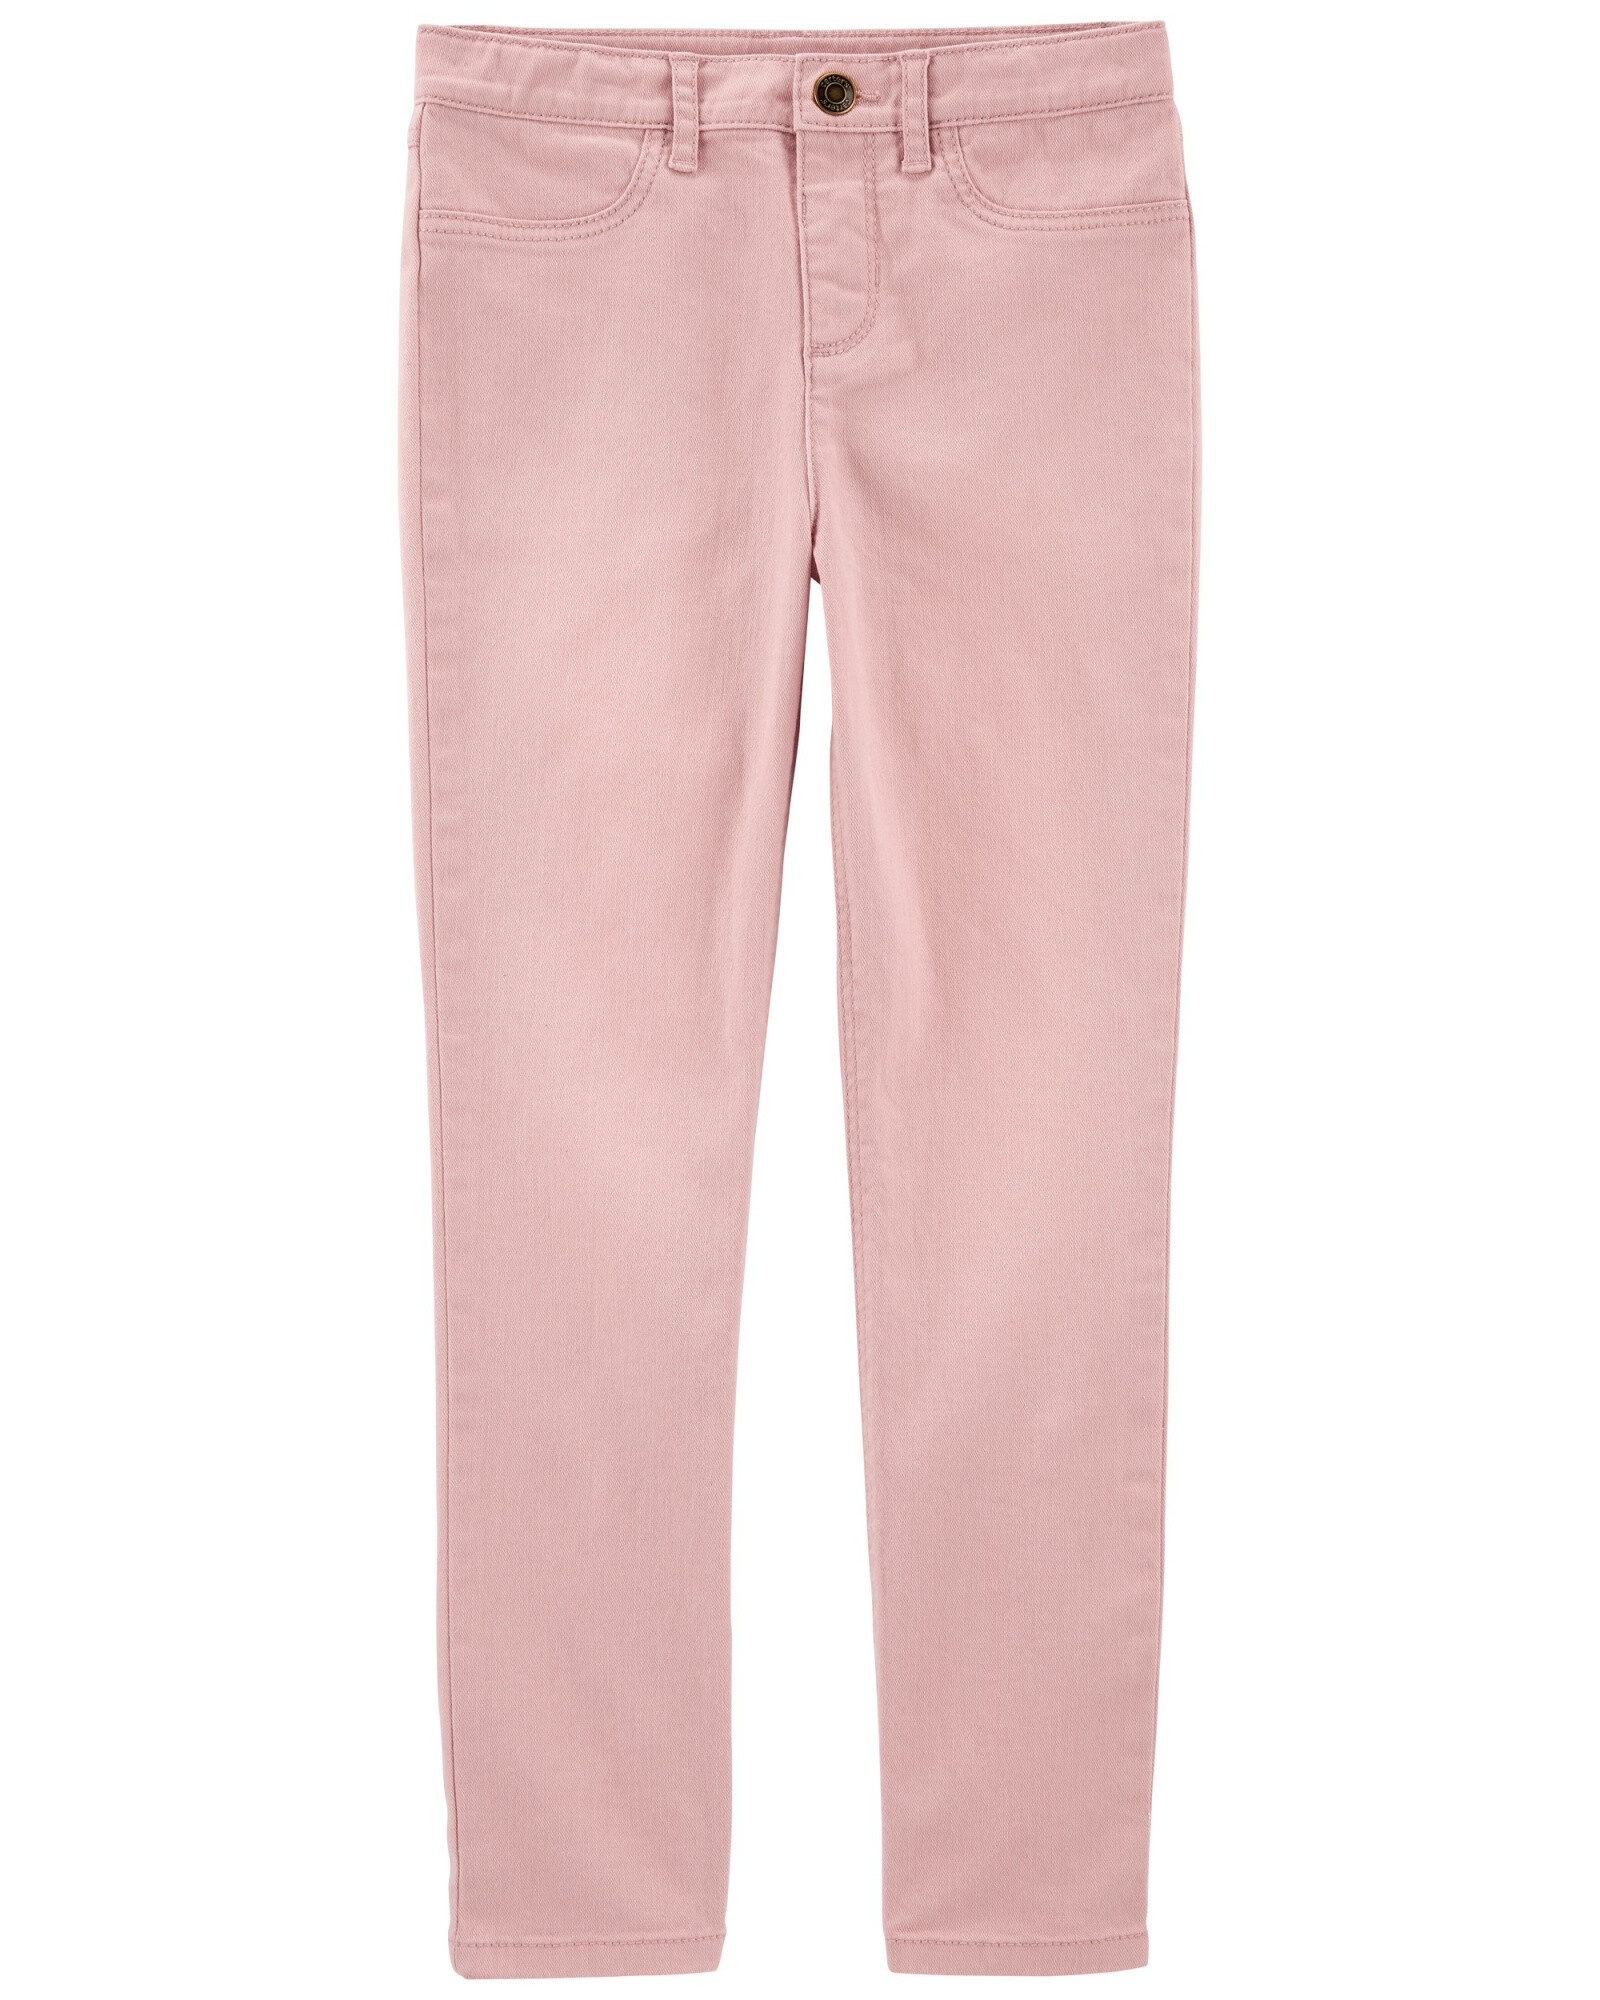 Pantalón de sarga, rosado. Talles 6-8 Sin color